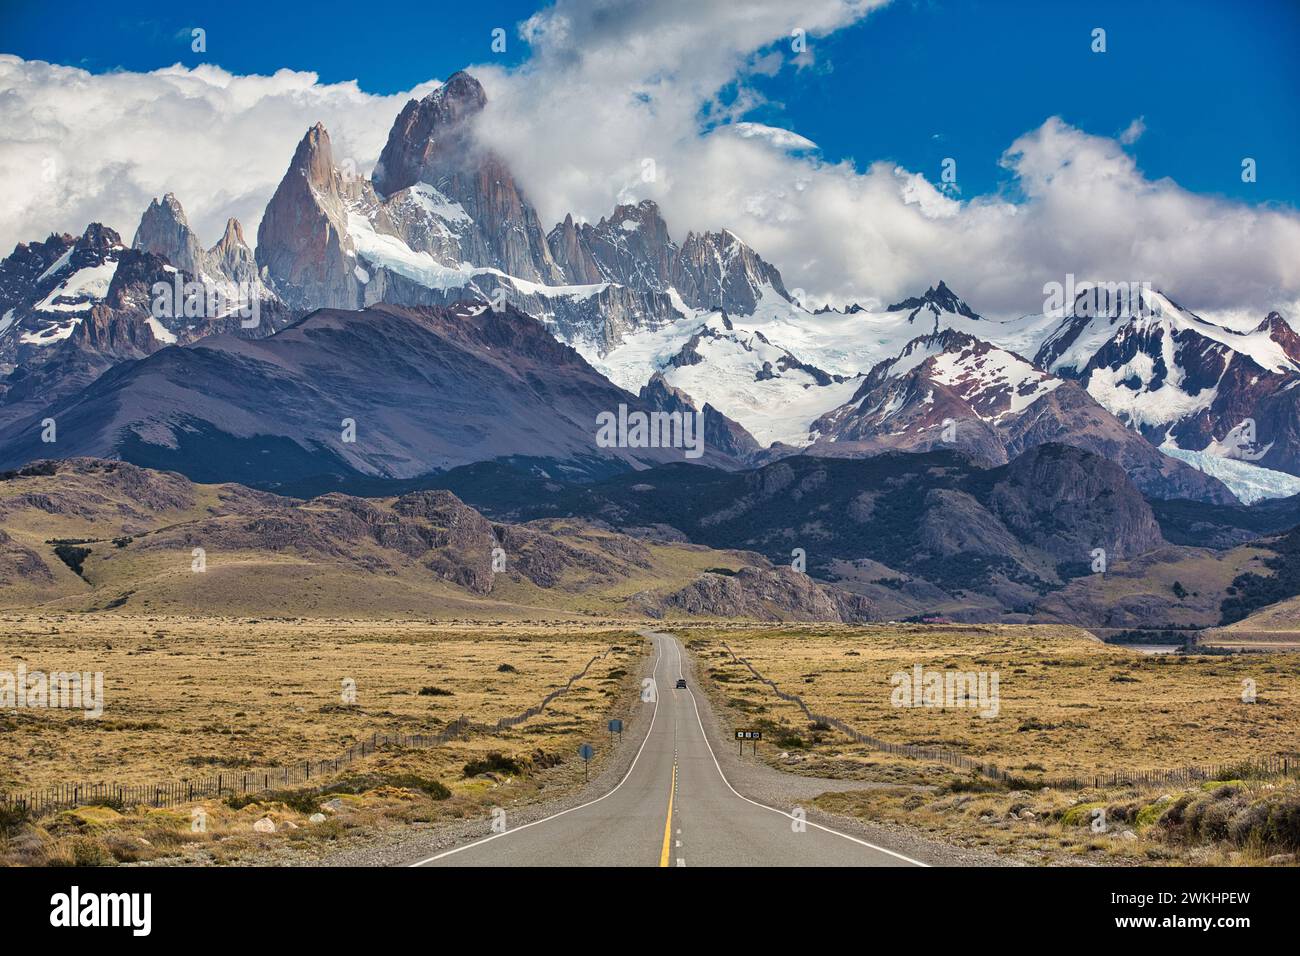 Los Glaciares National Park. Monte Fitz Roy. El Chalten. Santa Cruz province. Patagonia. Argentina. Stock Photo